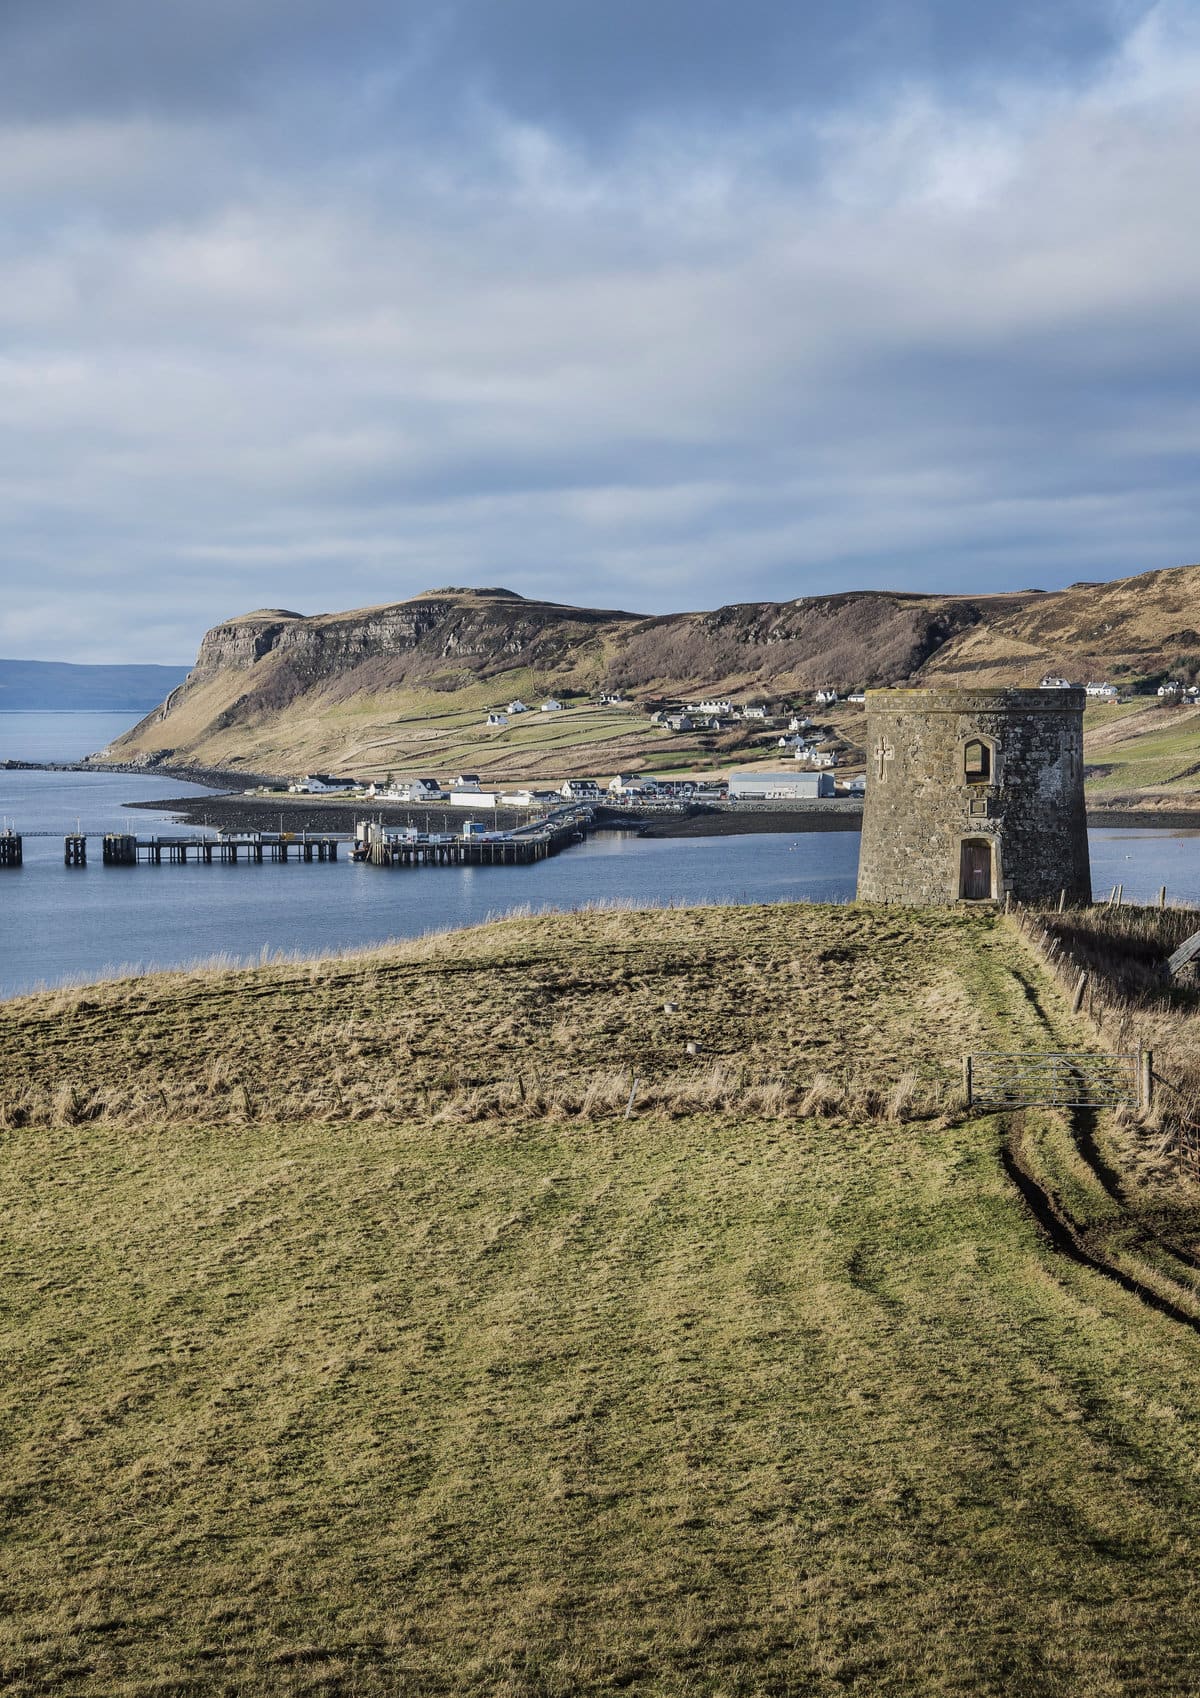 Uig Tower on the Isle of Skye